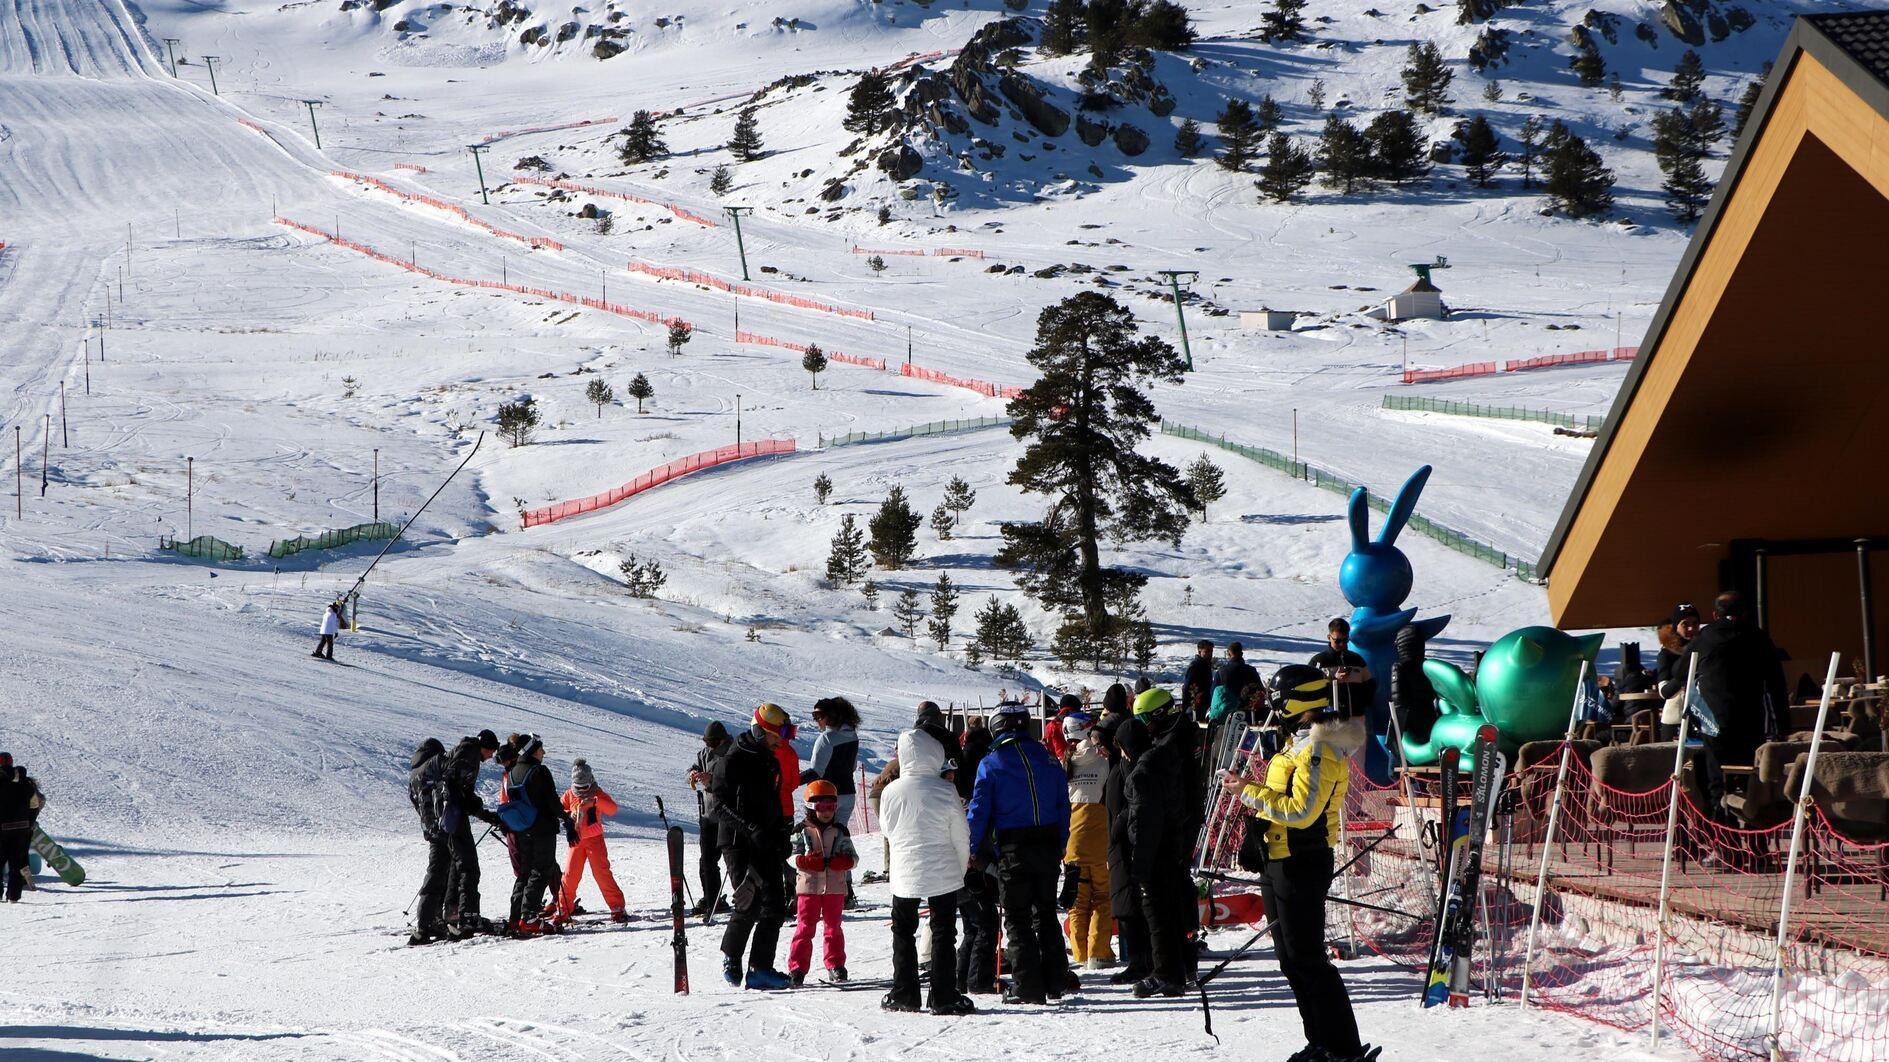 Semestervakantie stimuleert de vraag naar skigebieden